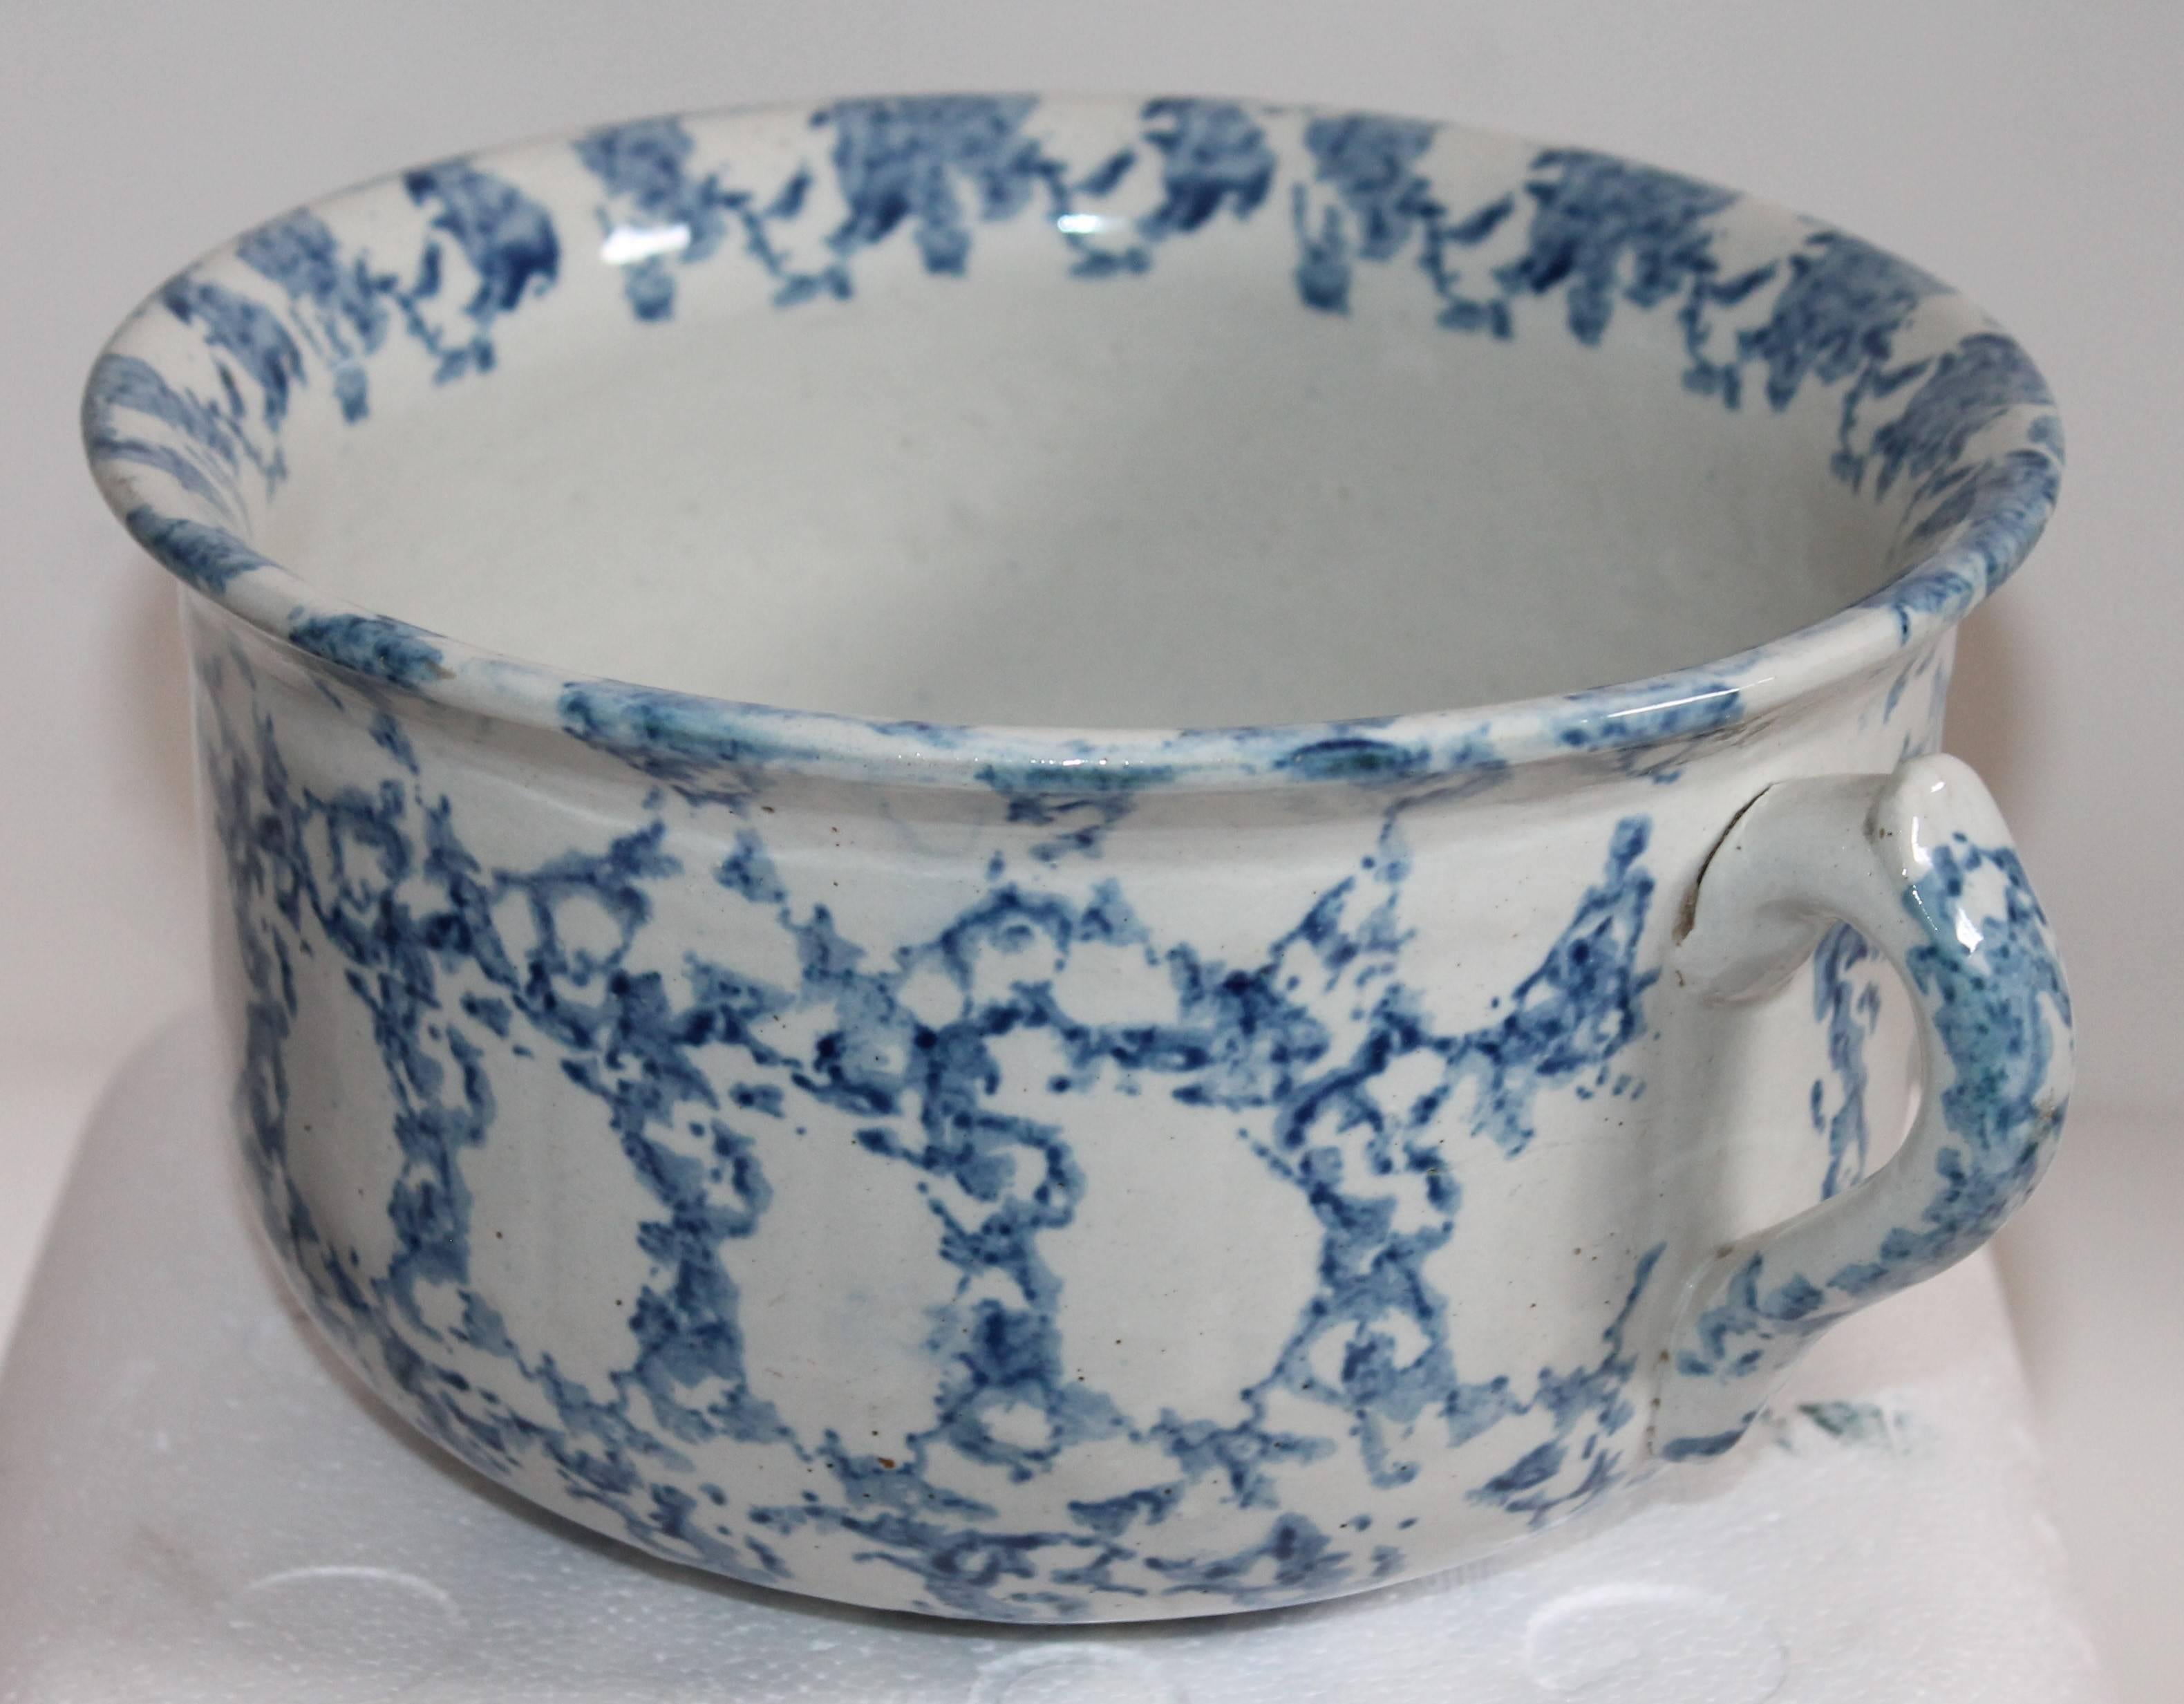 Diese 19. Jahrhundert Schwammware gesprenkelt Keramik Töpfchen mit Griff. Es ist in hervorragendem Zustand.